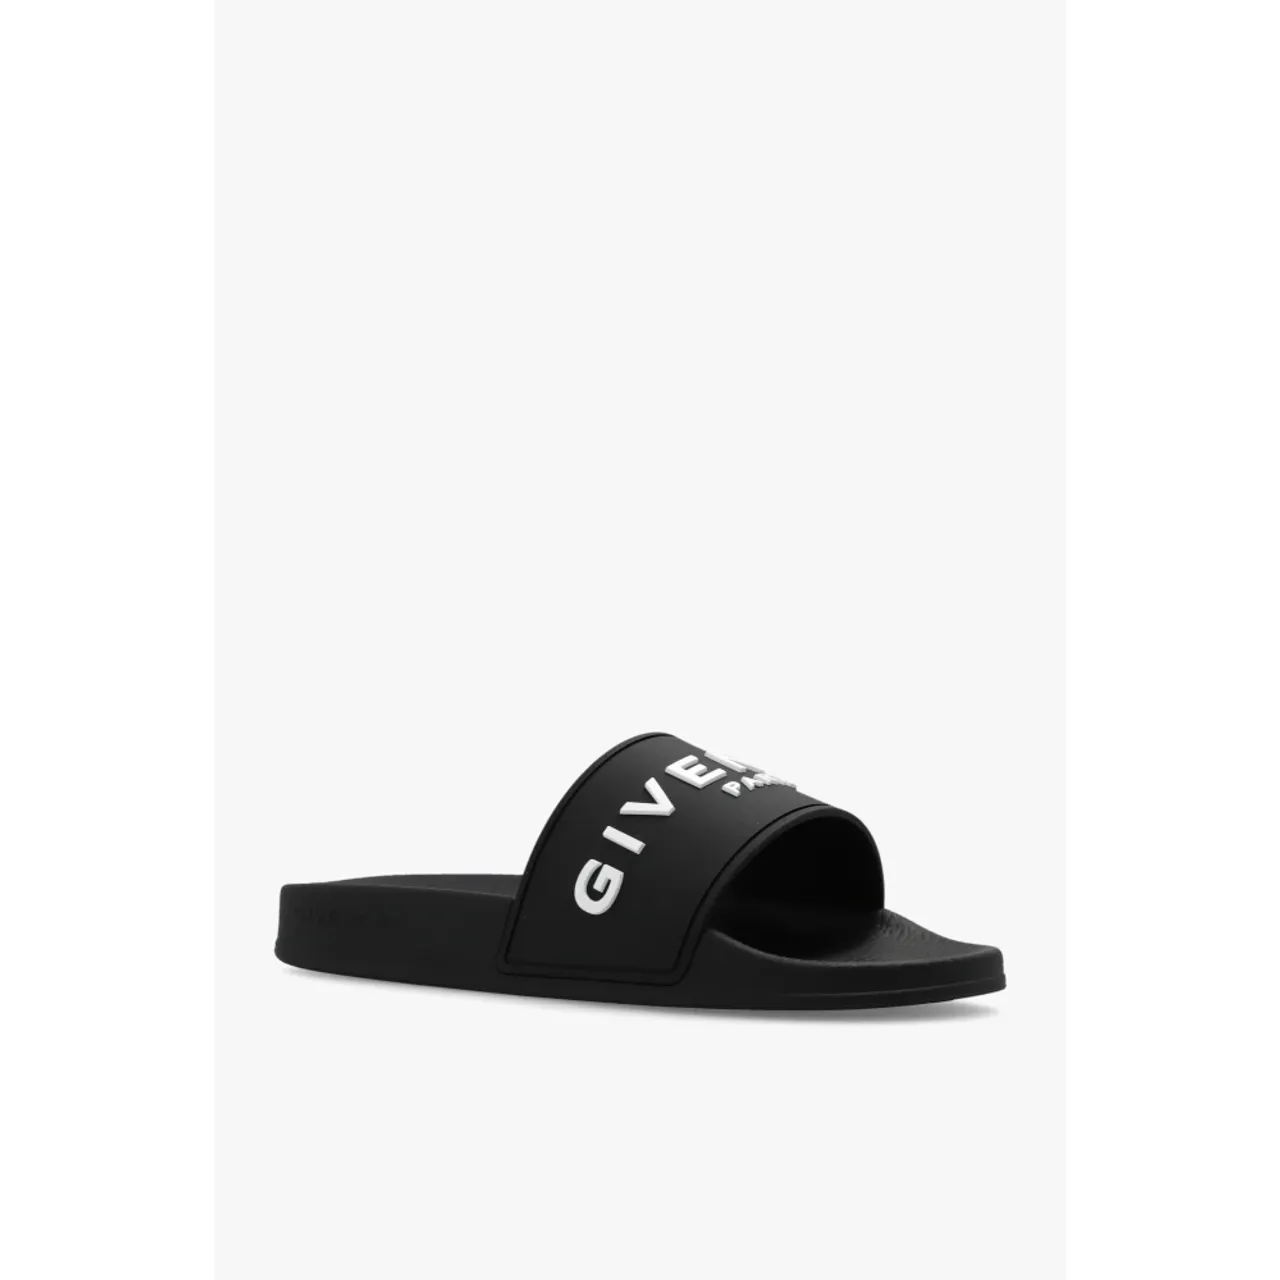 Givenchy , Slides with logo ,Black female, Sizes: